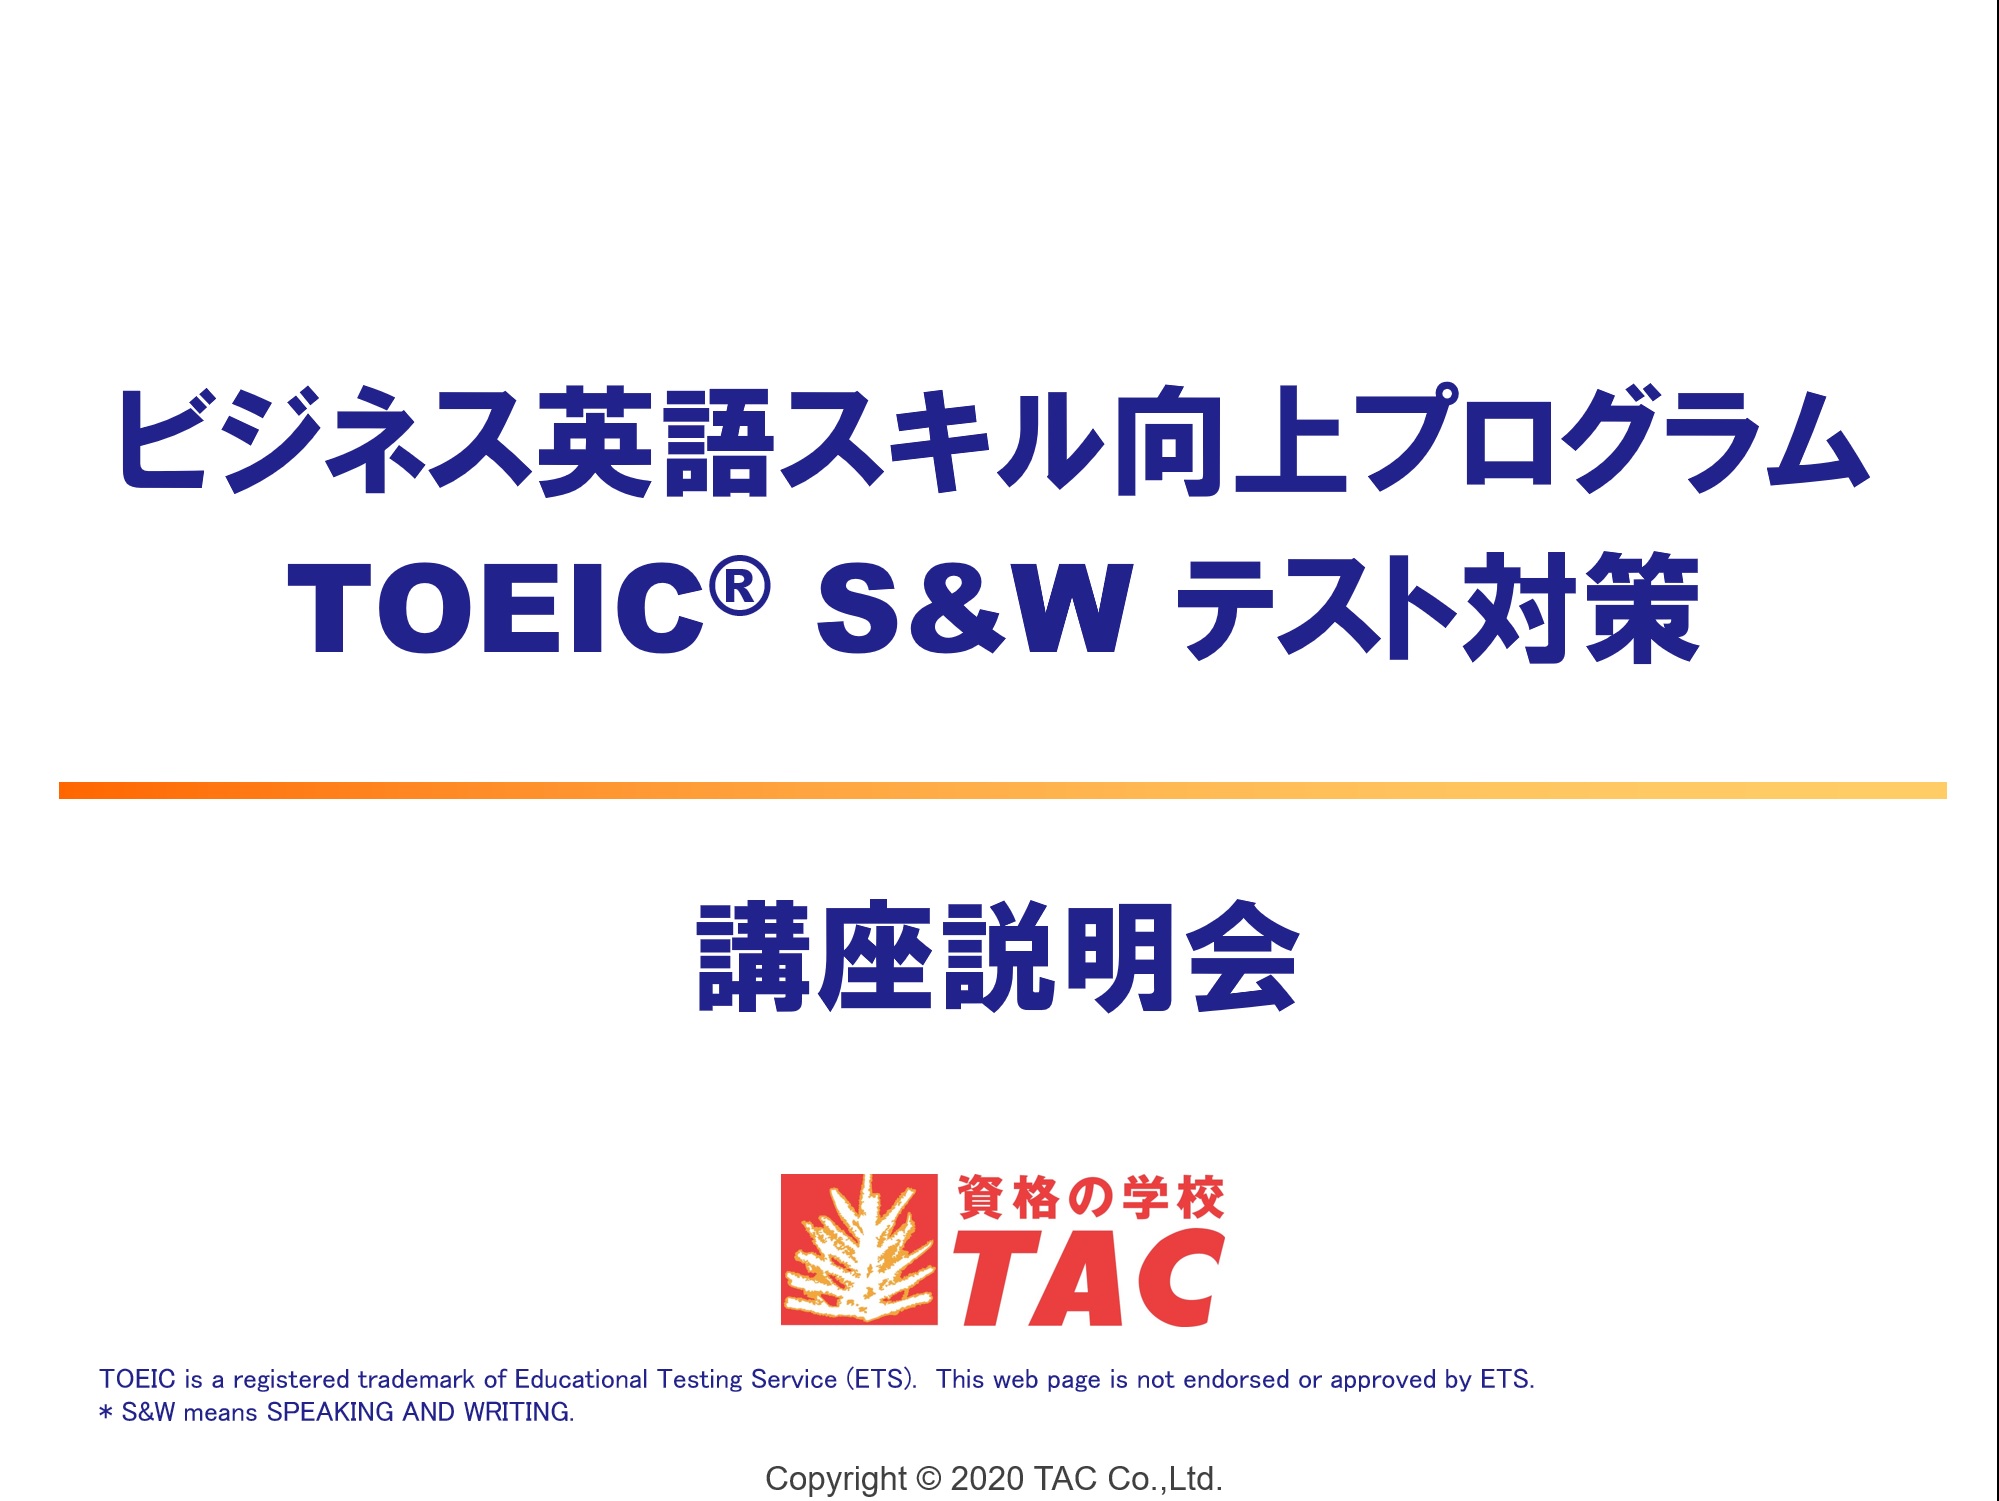 動画一覧 ビジネス英語スキル向上 Toeic S Wテスト対策 資格の学校tac タック